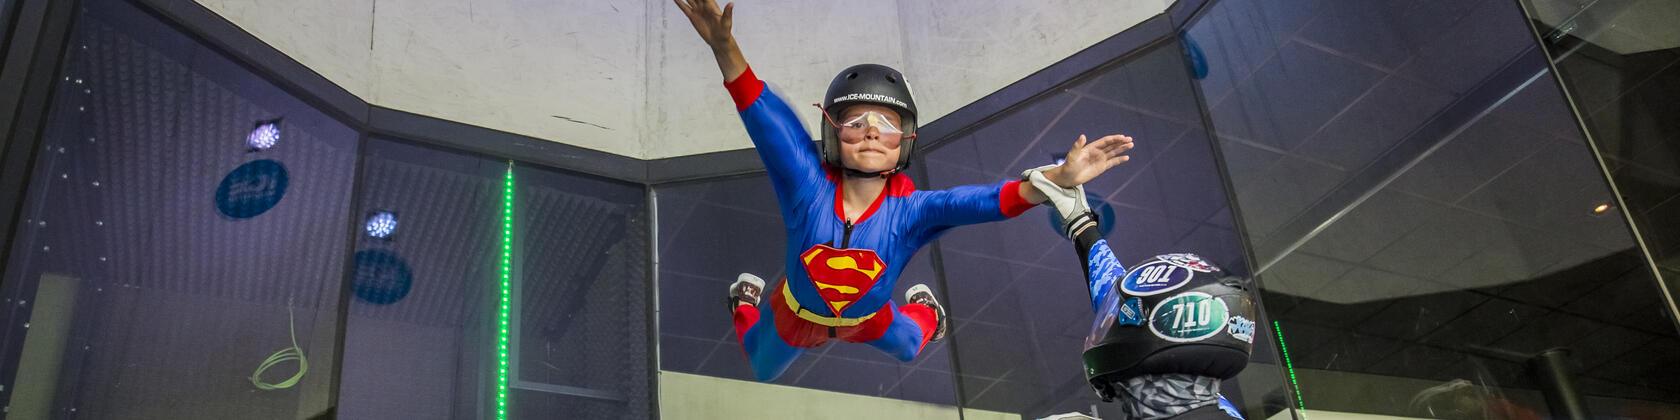 vrouw met superwoman kostuum is aan het indoor skydiven, een begeleider staat er naast om te helpen waar nodig